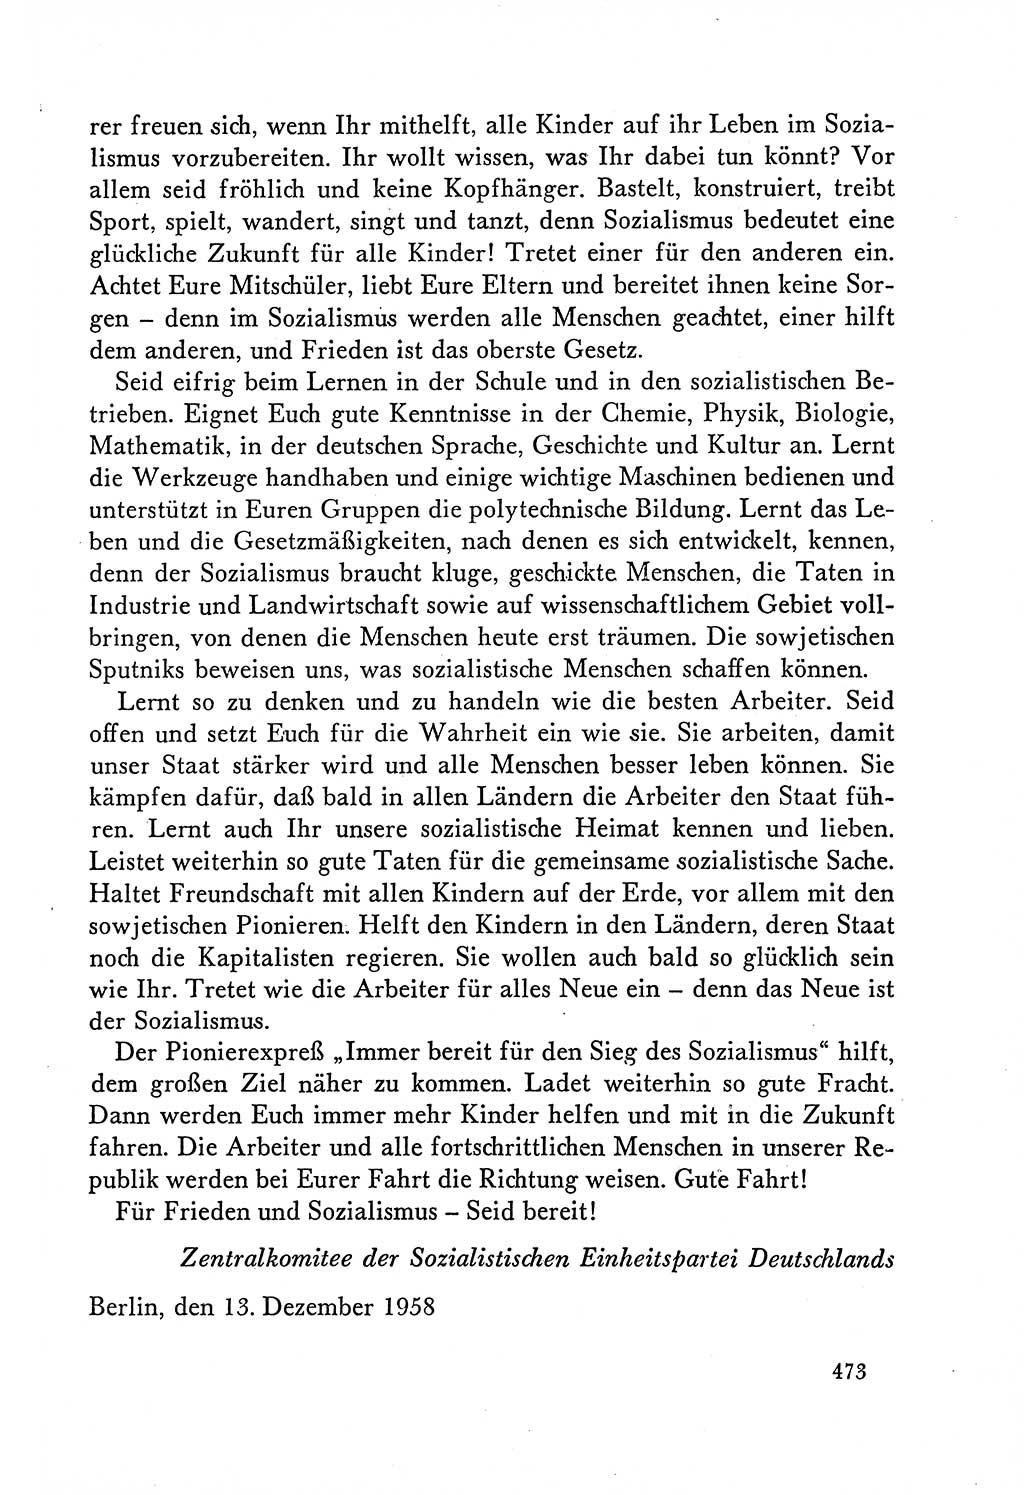 Dokumente der Sozialistischen Einheitspartei Deutschlands (SED) [Deutsche Demokratische Republik (DDR)] 1958-1959, Seite 473 (Dok. SED DDR 1958-1959, S. 473)